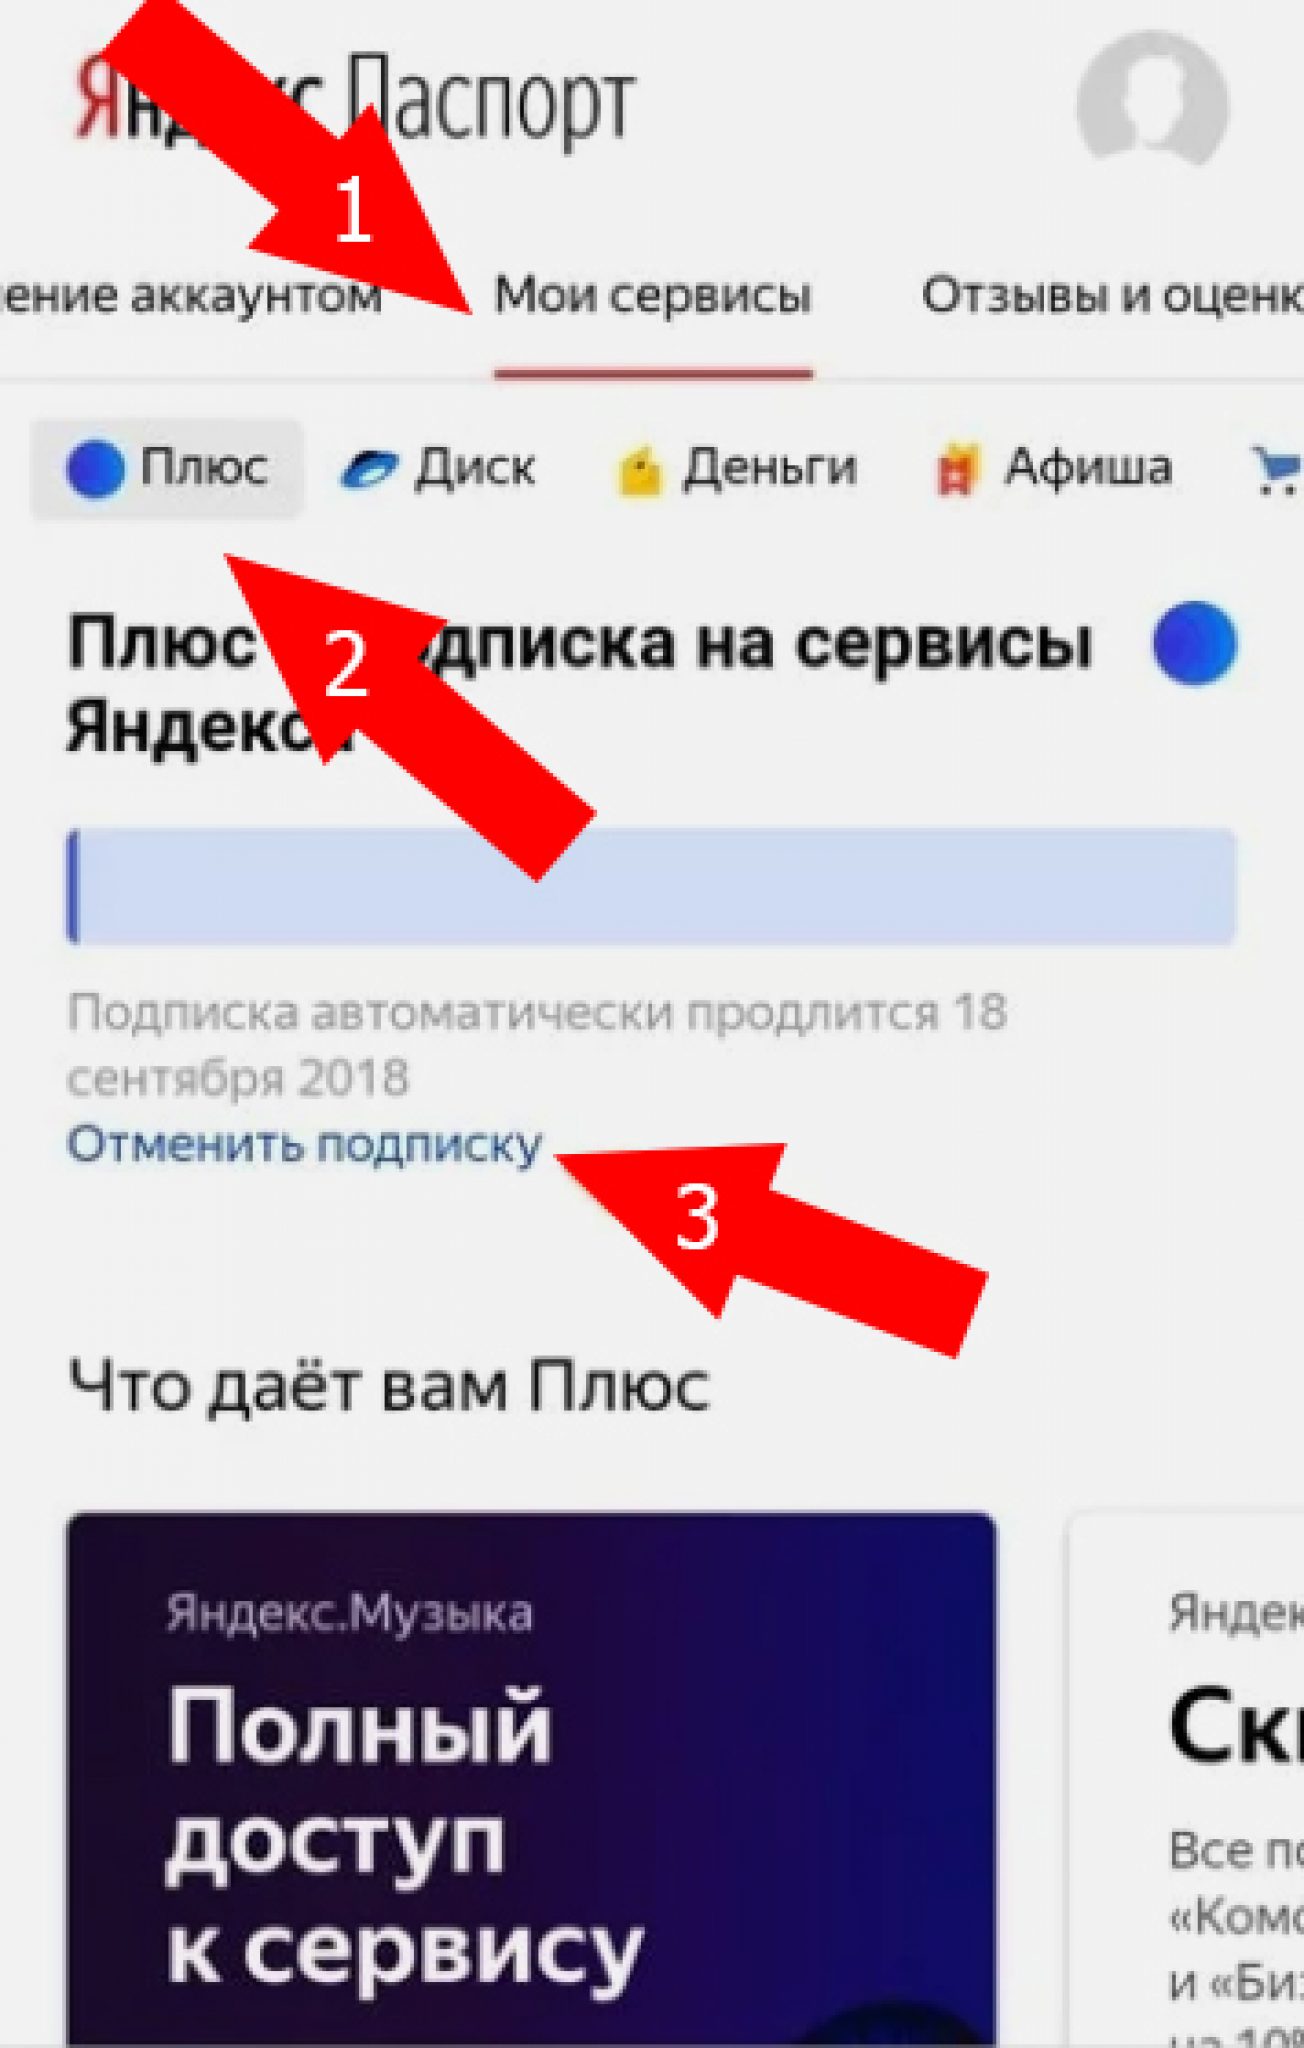 В статье разобрано, что за подписка ЯндексПлюс, и можно ли пользоваться её возможностями совершенно бесплатно на длительный период